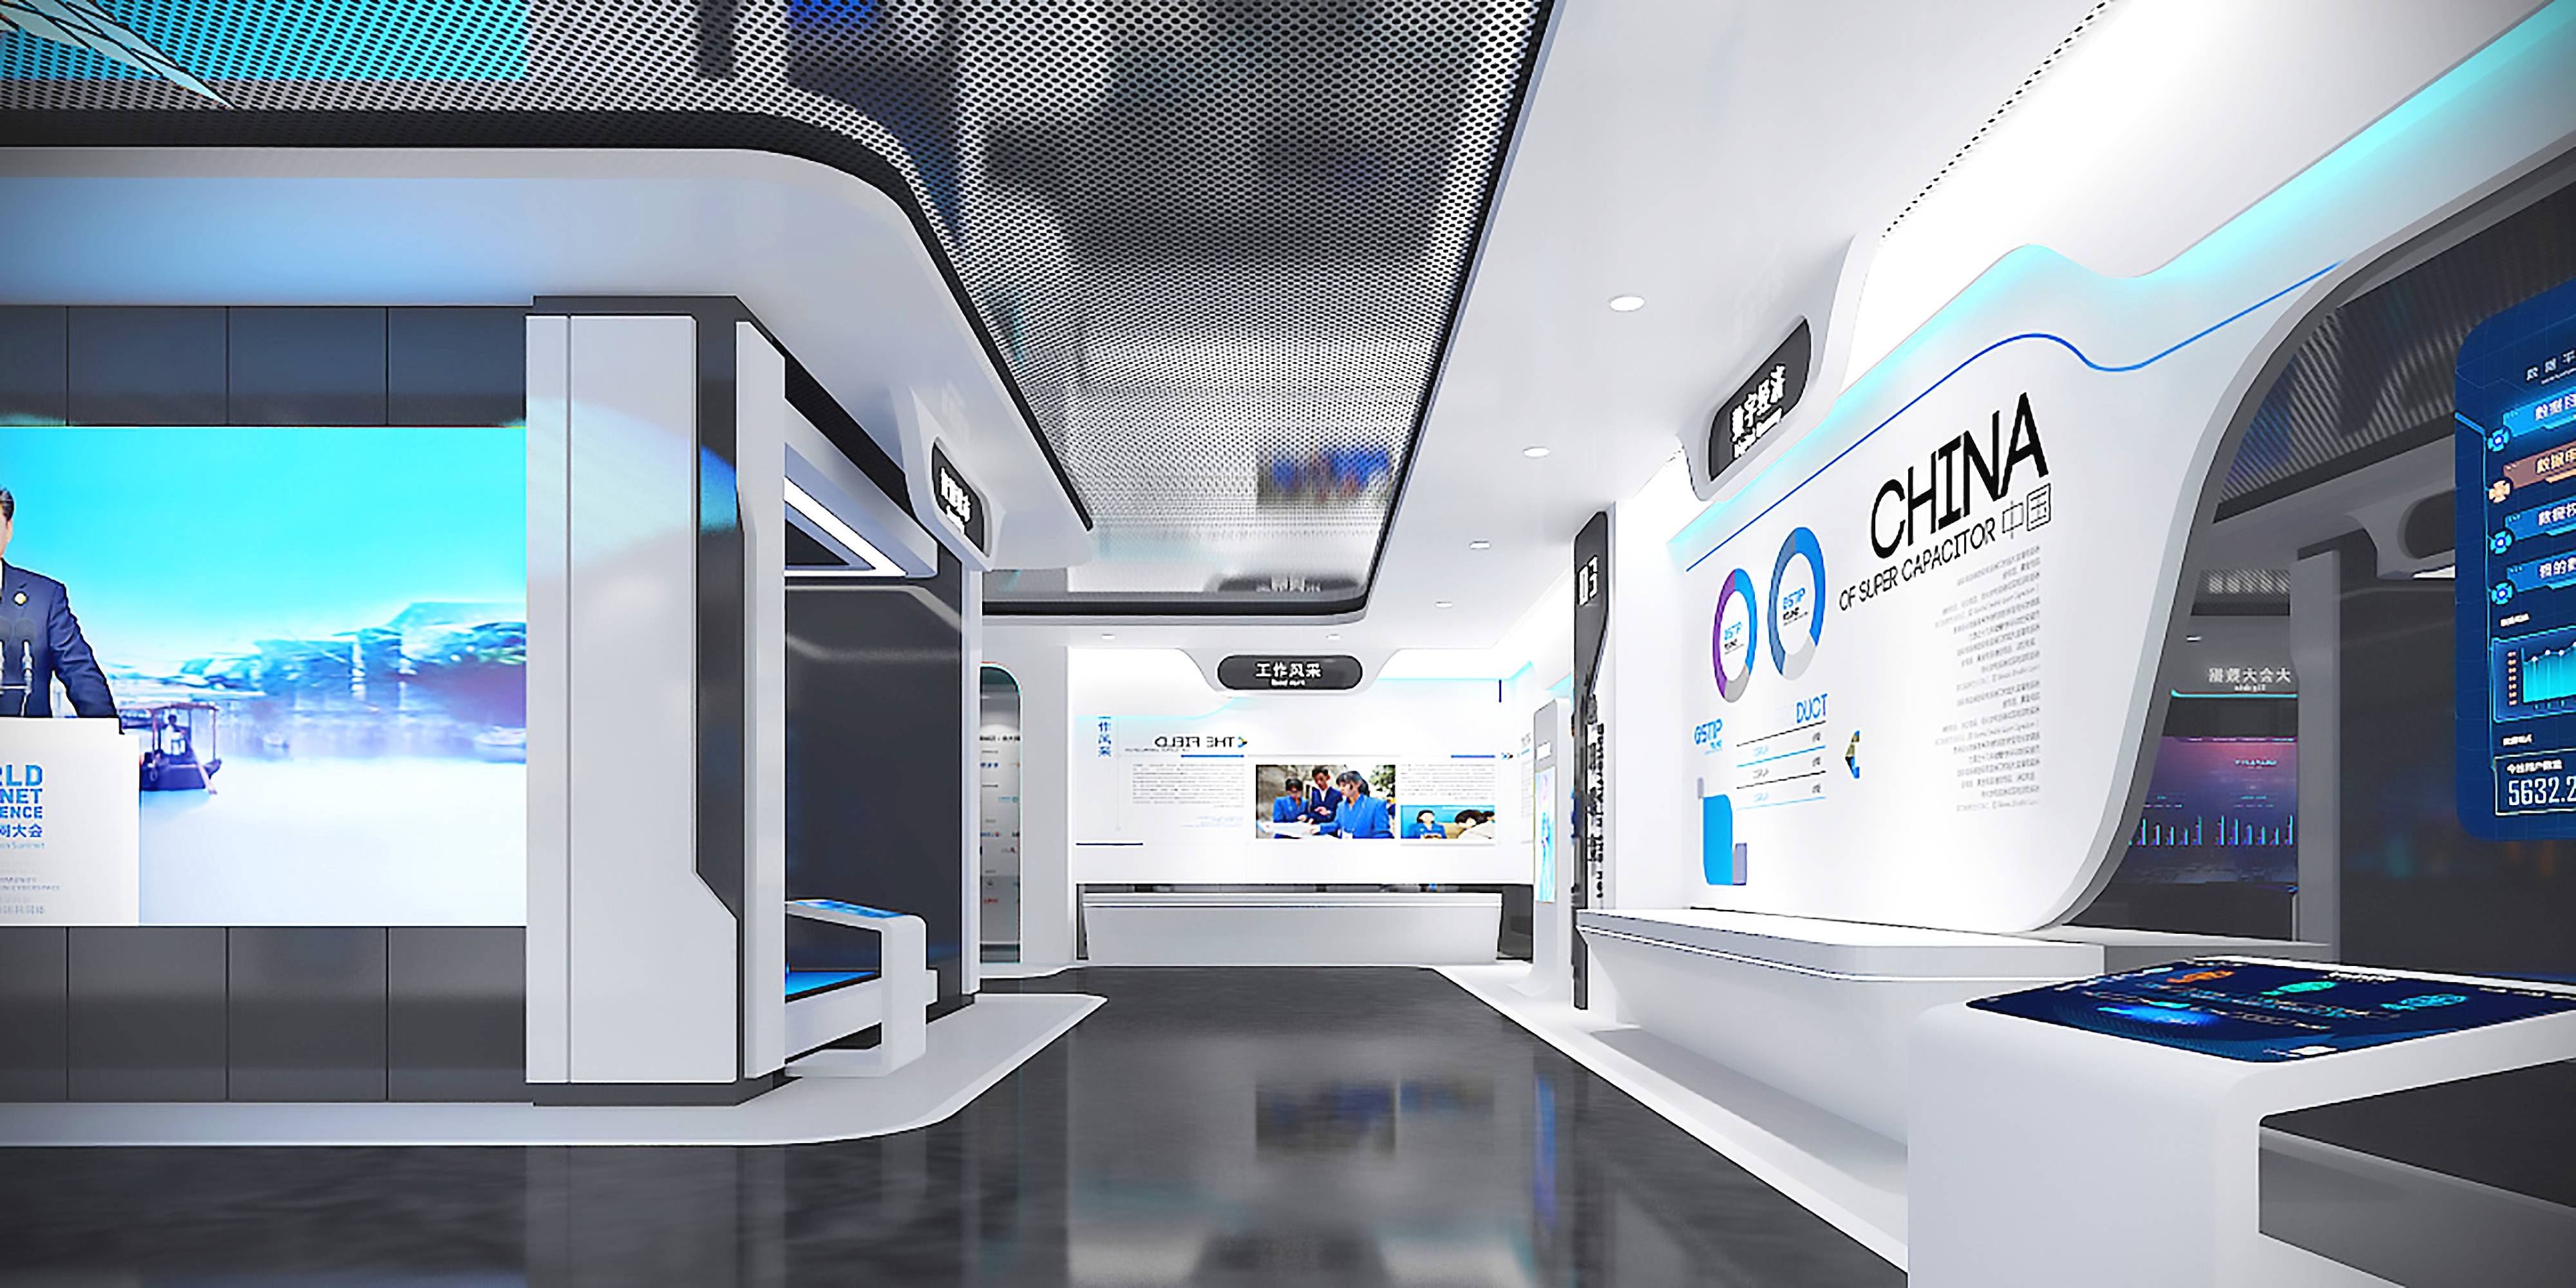 这是一张现代化展览厅的图片，内部设计科技感十足，以白蓝色调为主，展示屏幕和互动设备布置其中。